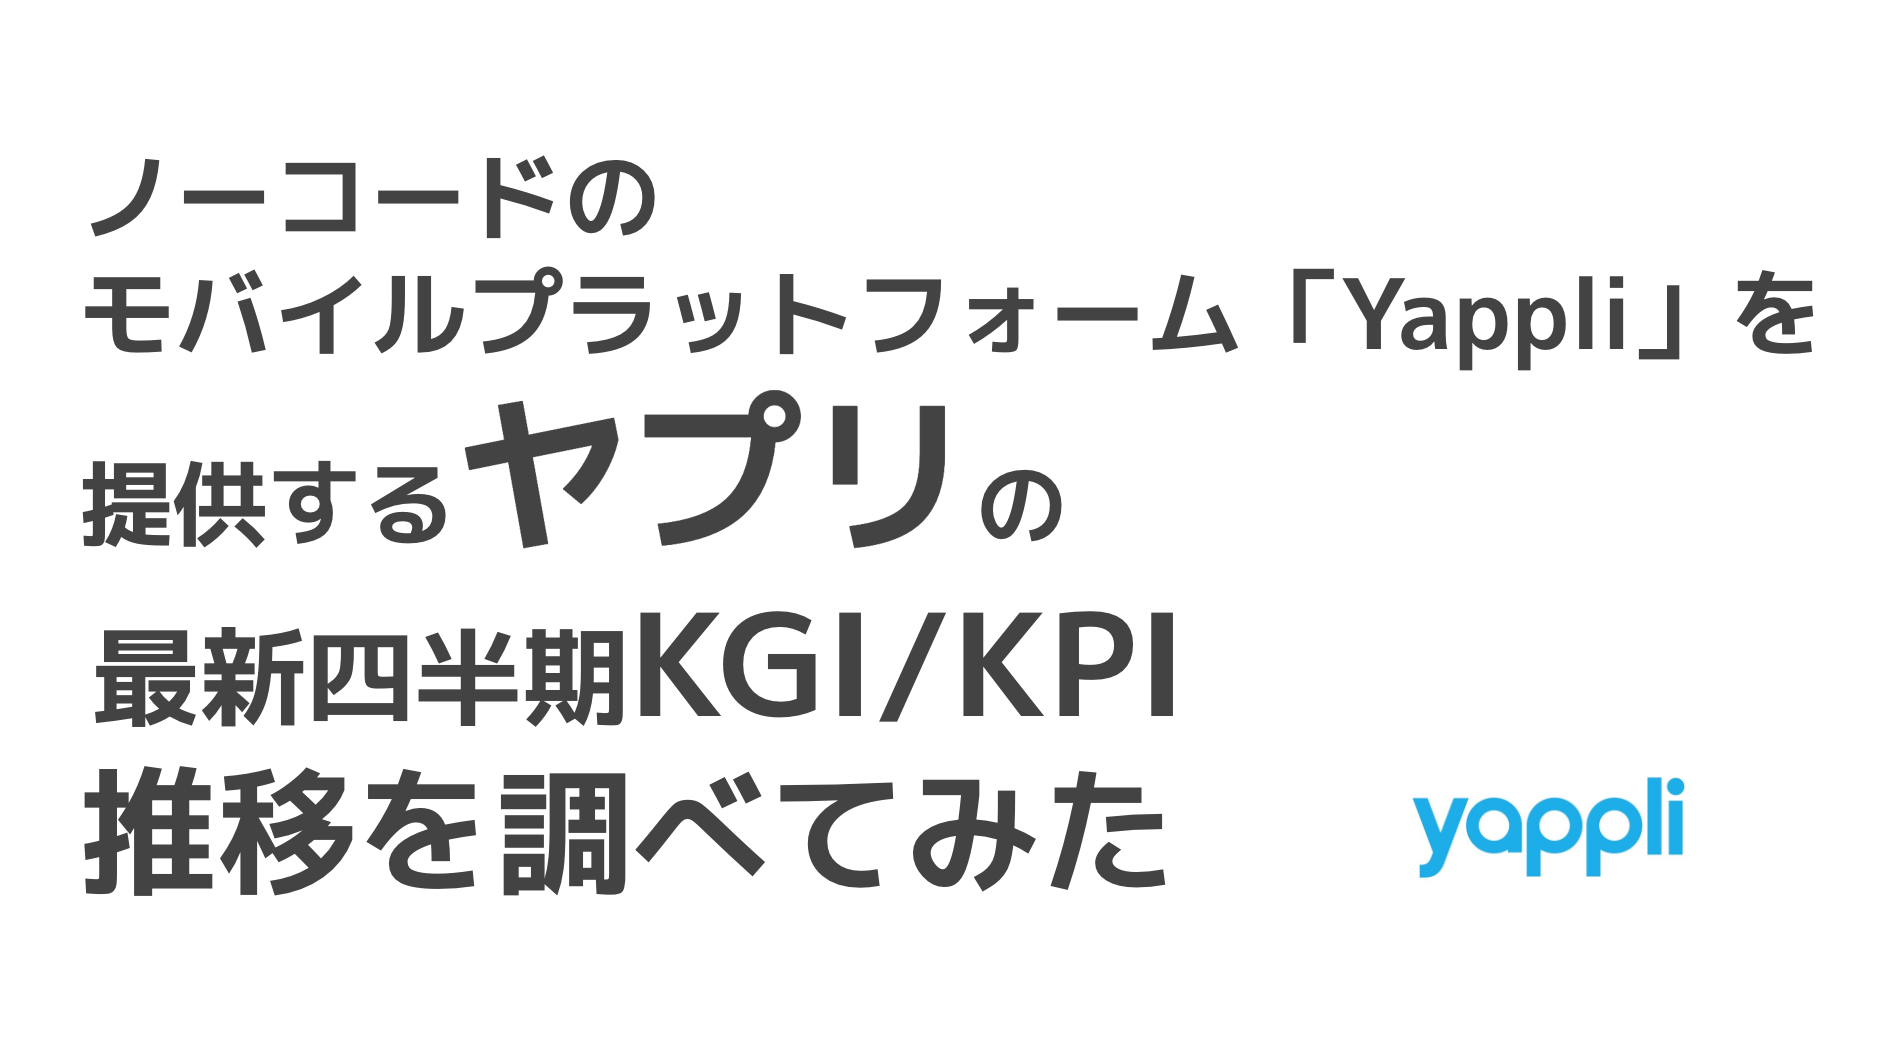 saaslife_ノーコードのモバイルプラットフォーム「Yappli」を提供するヤプリの最新四半期KGI/KPI推移を調べてみた